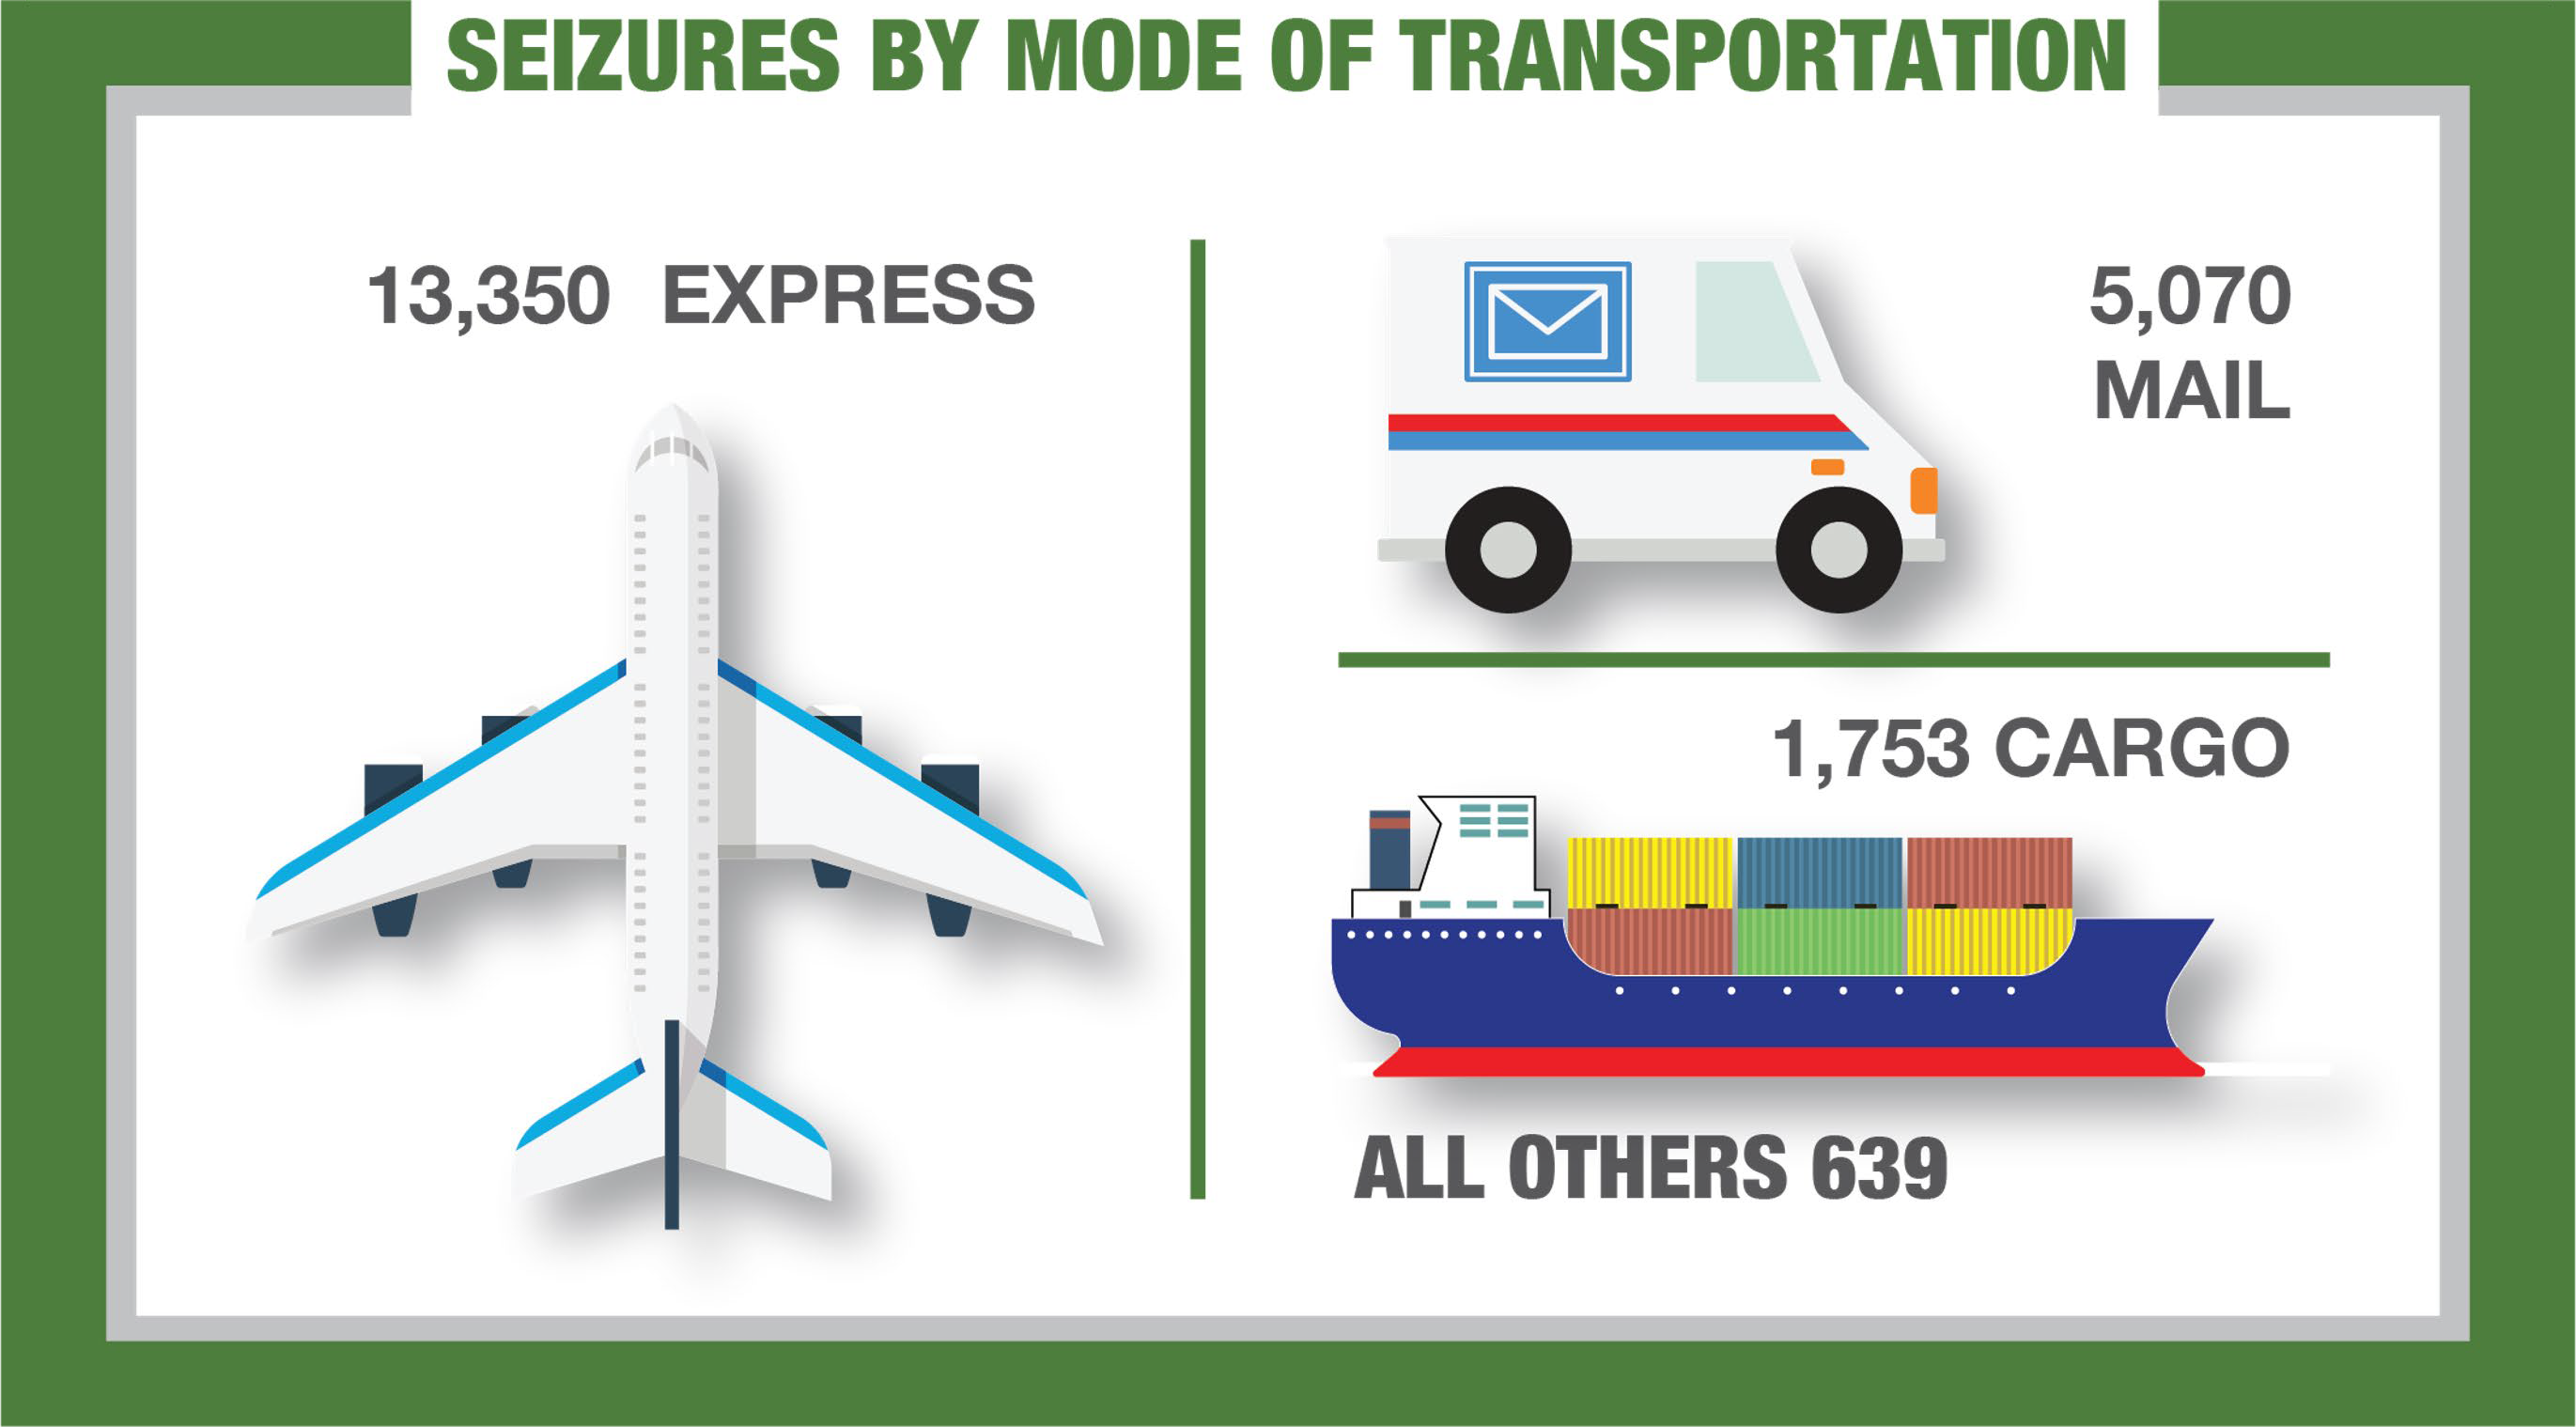 Table: Seizures by Mode of Transportation. Express: 13,350 Seizures; Cargo: 1,753 Seizures; Mail: 5,070 Seizures; All Others: 639 Seizures.